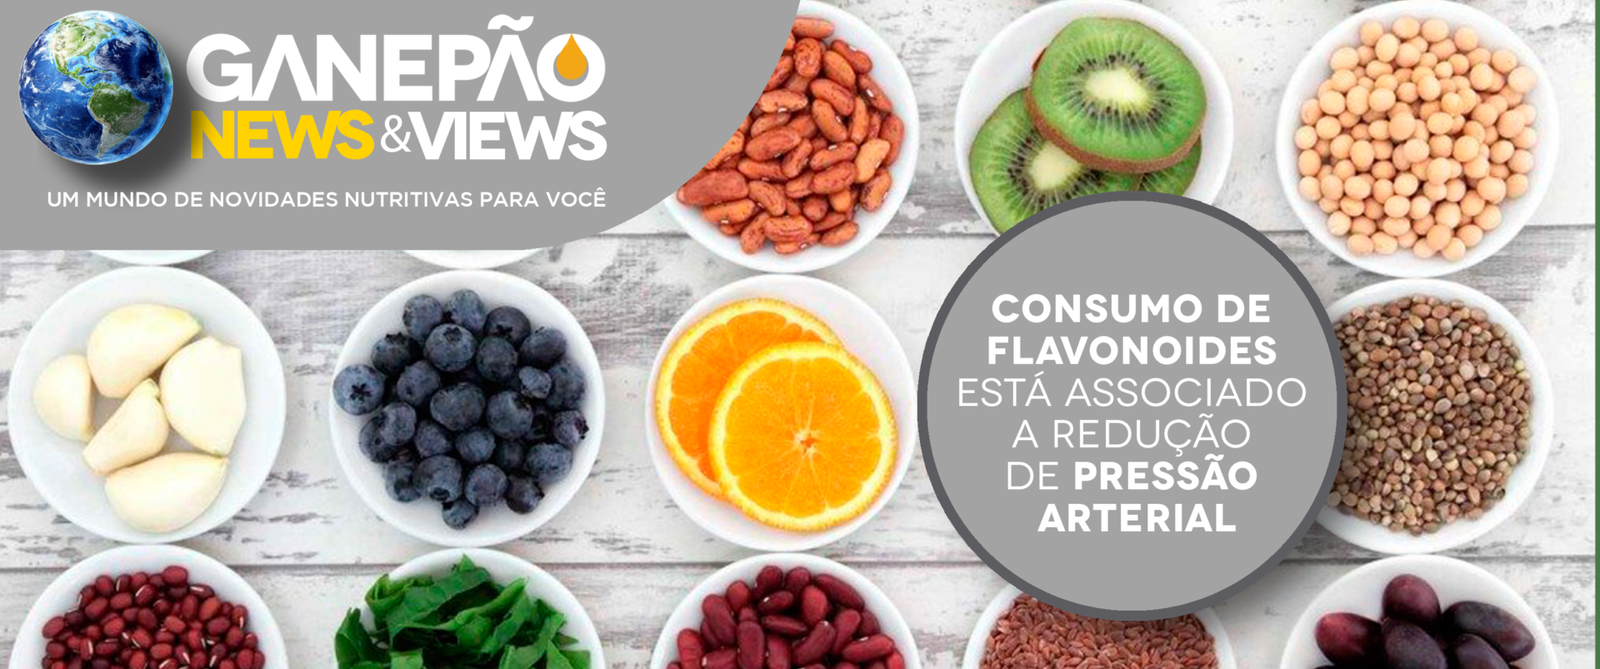 You are currently viewing Consumo de flavonoides está associado a redução de pressão arterial